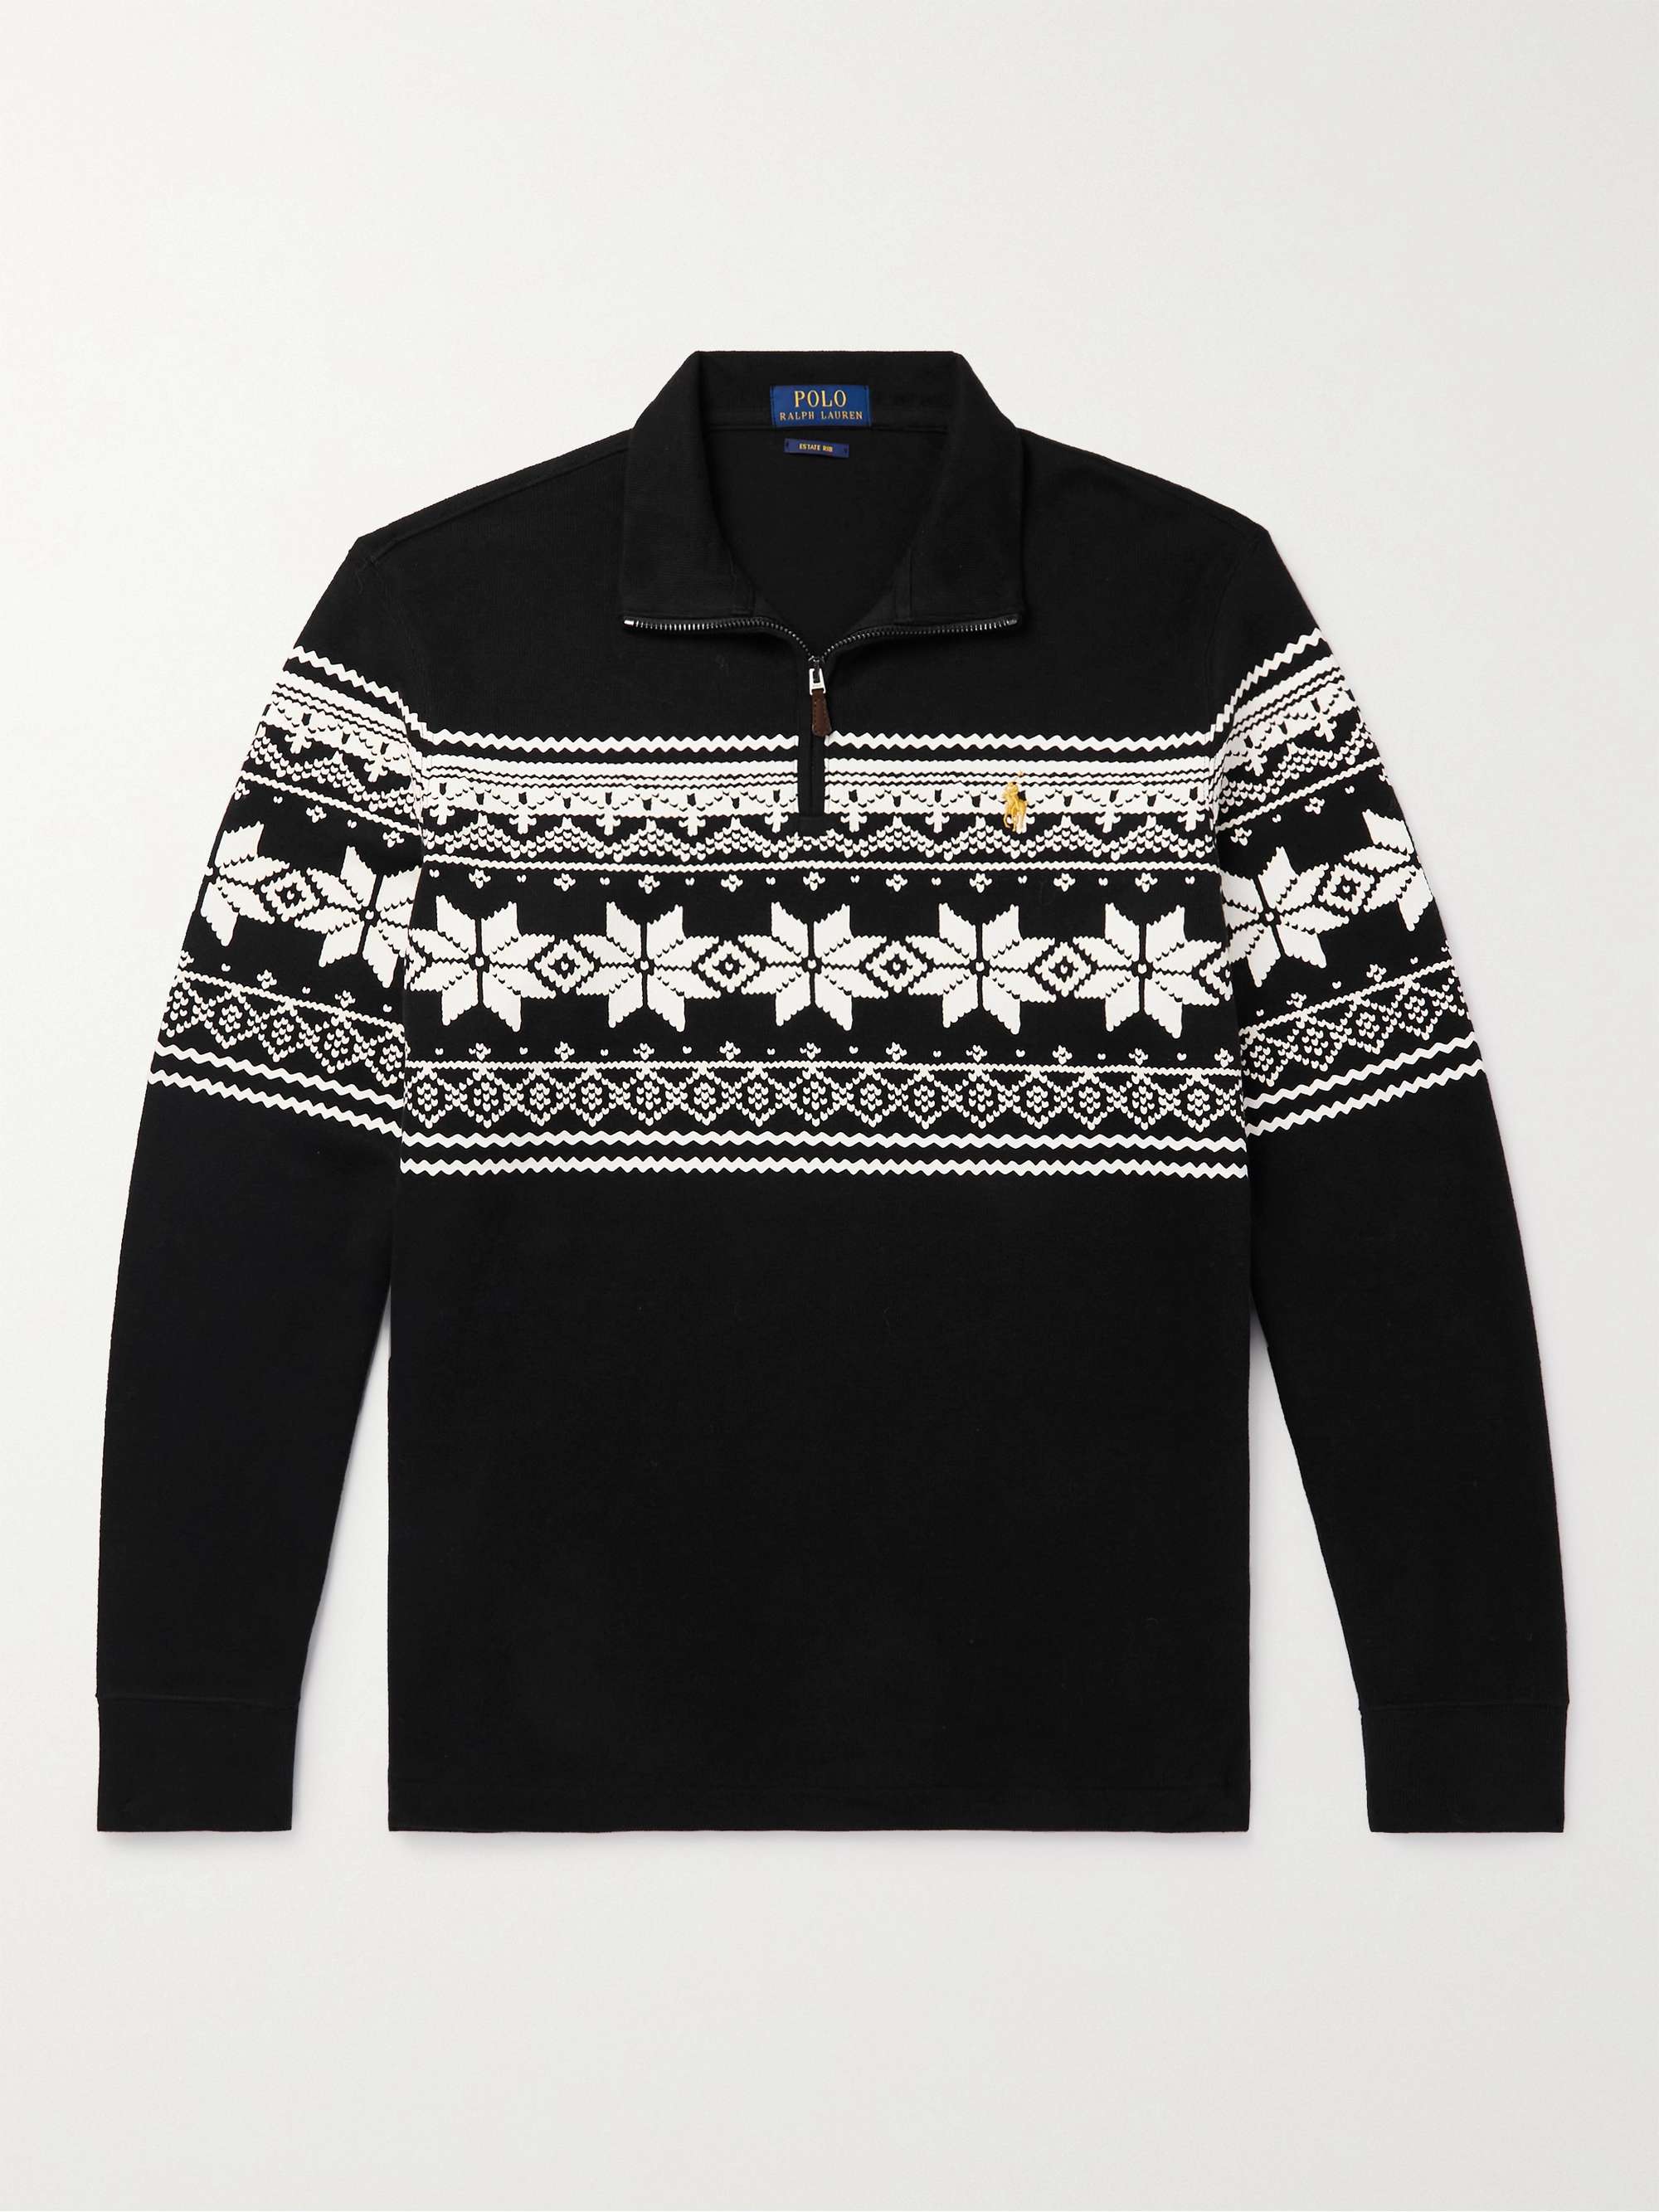 Black Printed Cotton-Jersey Half-Zip Sweatshirt | POLO RALPH LAUREN | MR  PORTER